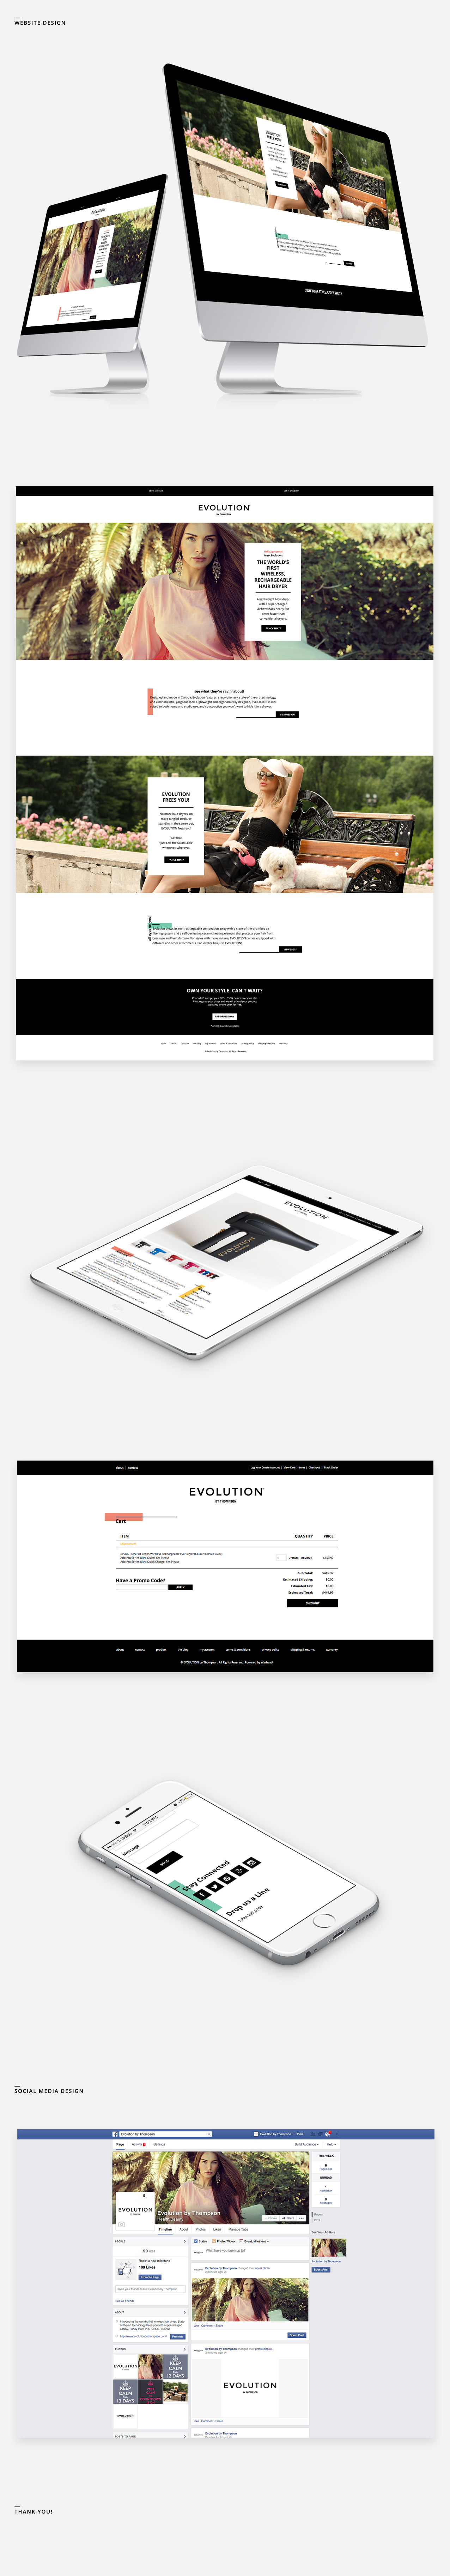 EVOLUTION Website Design